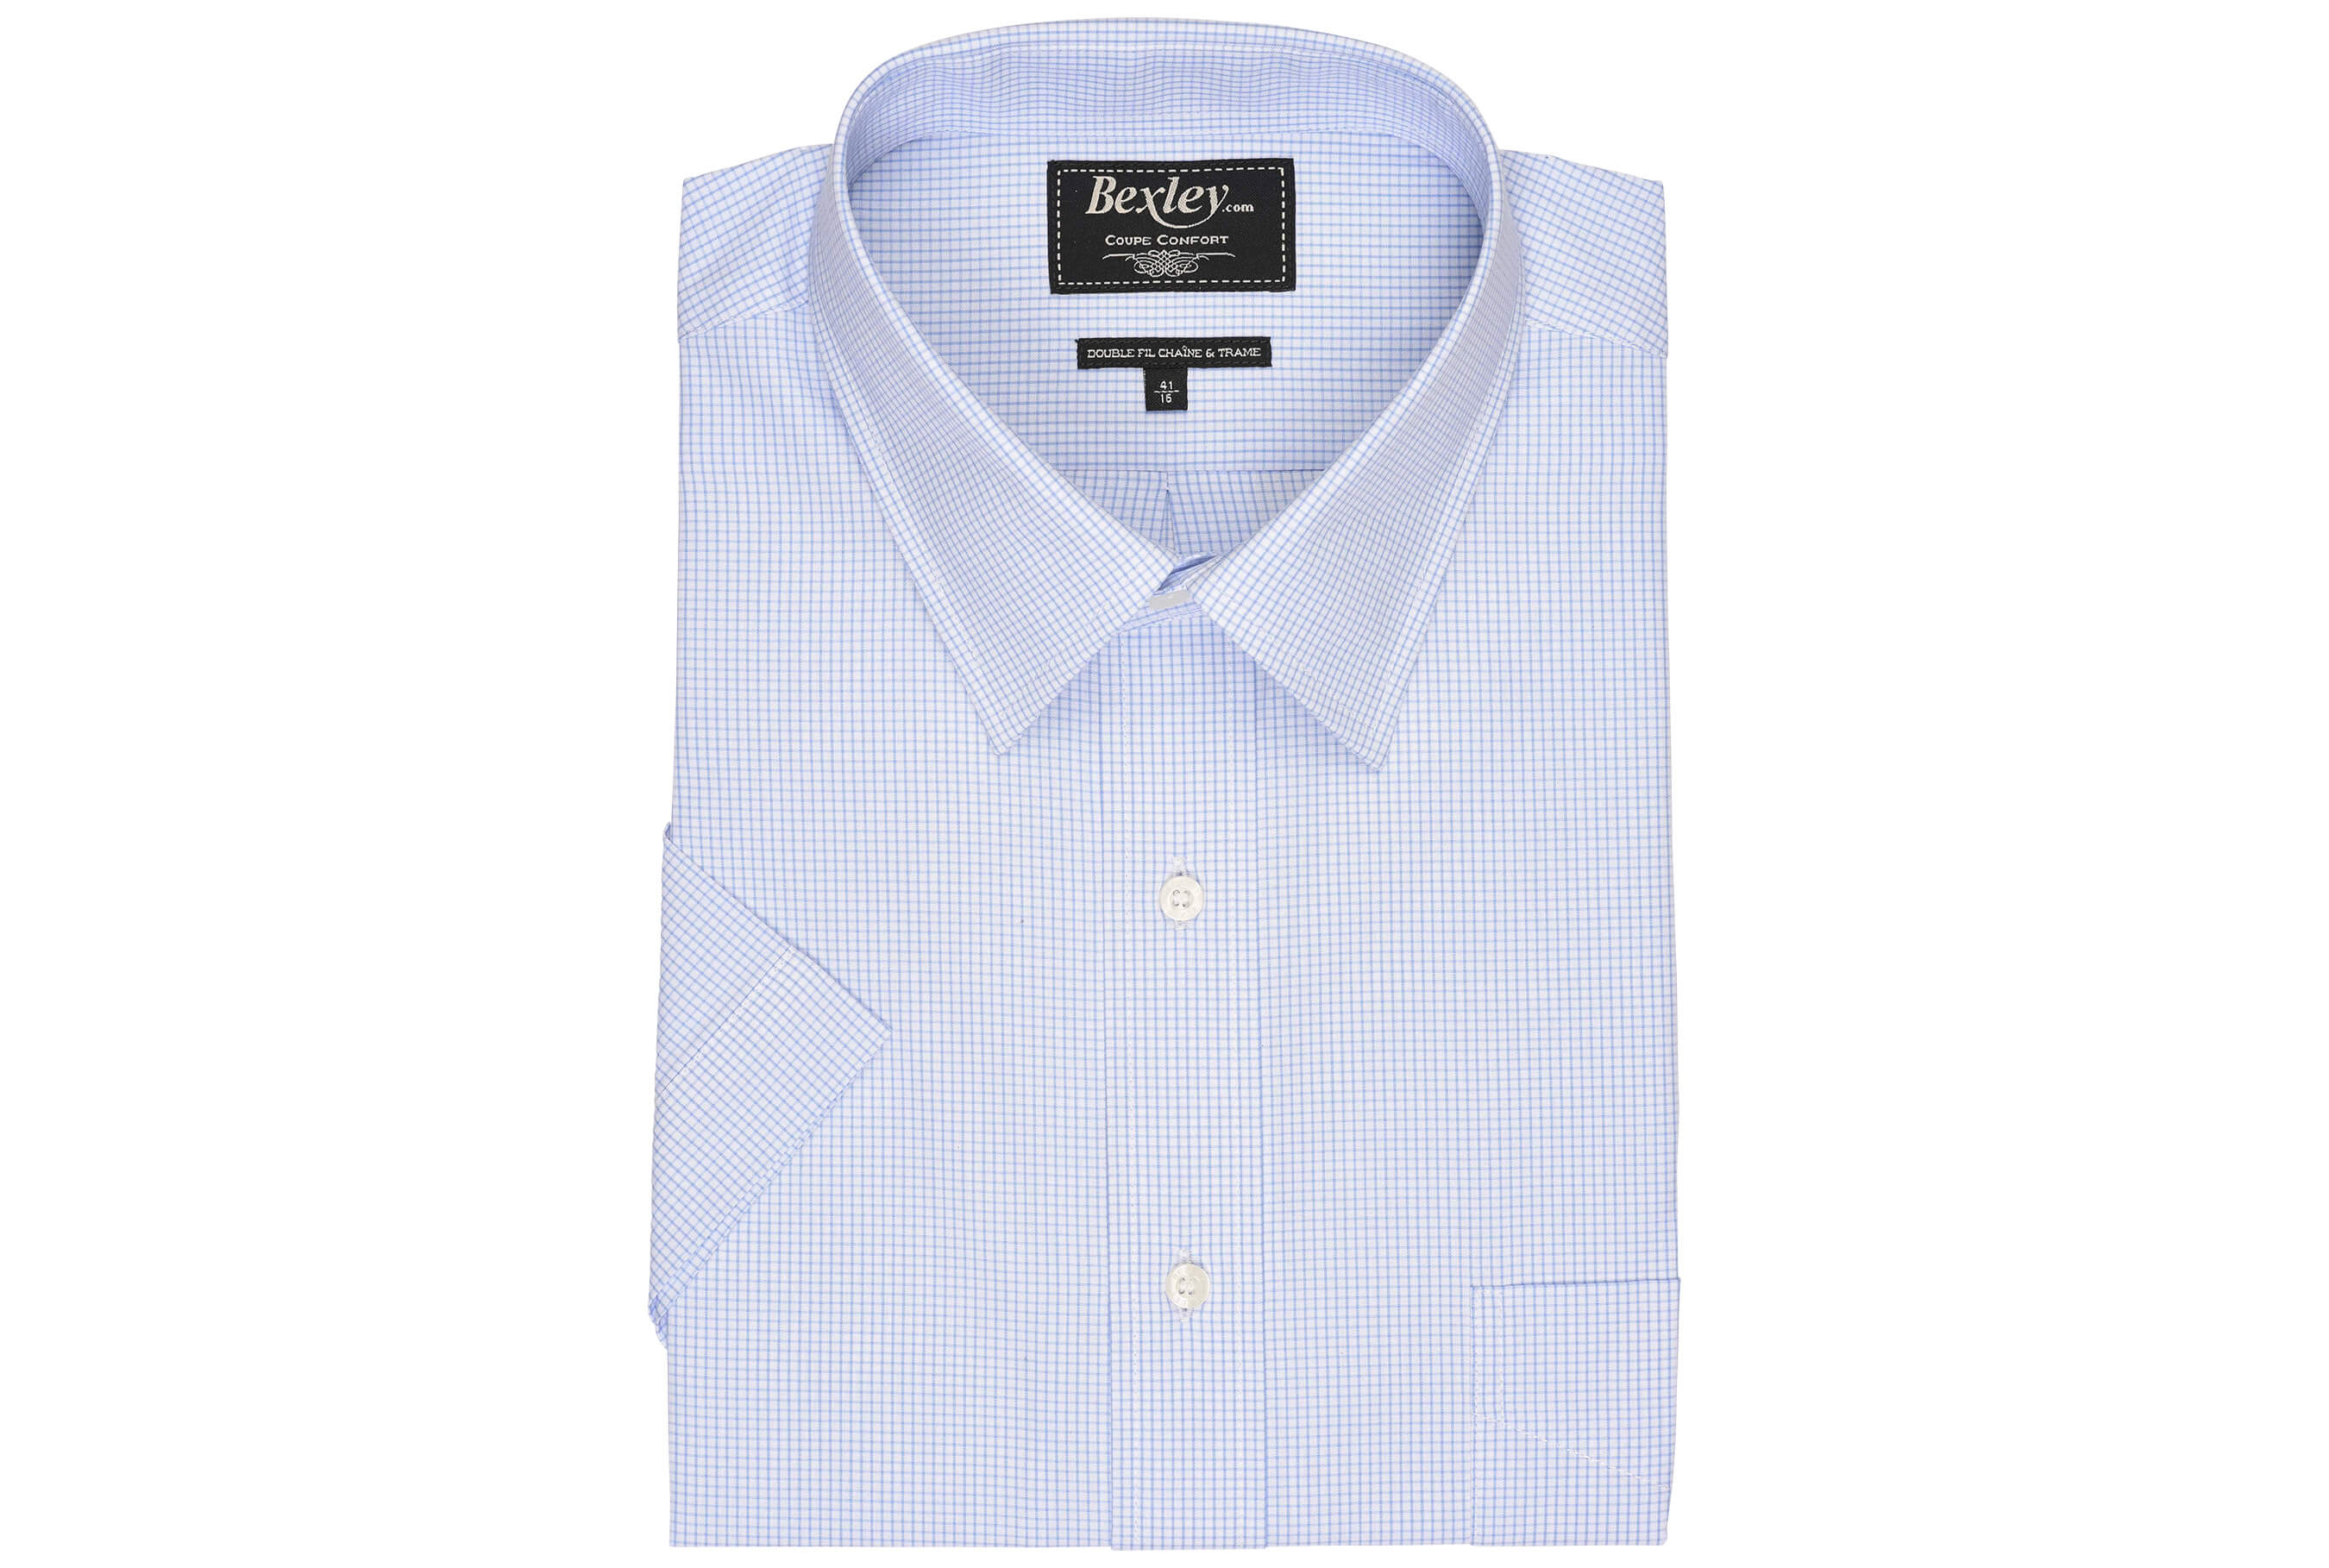 bexley chemise homme 100% coton, blanc et bleu clair, manches courtes